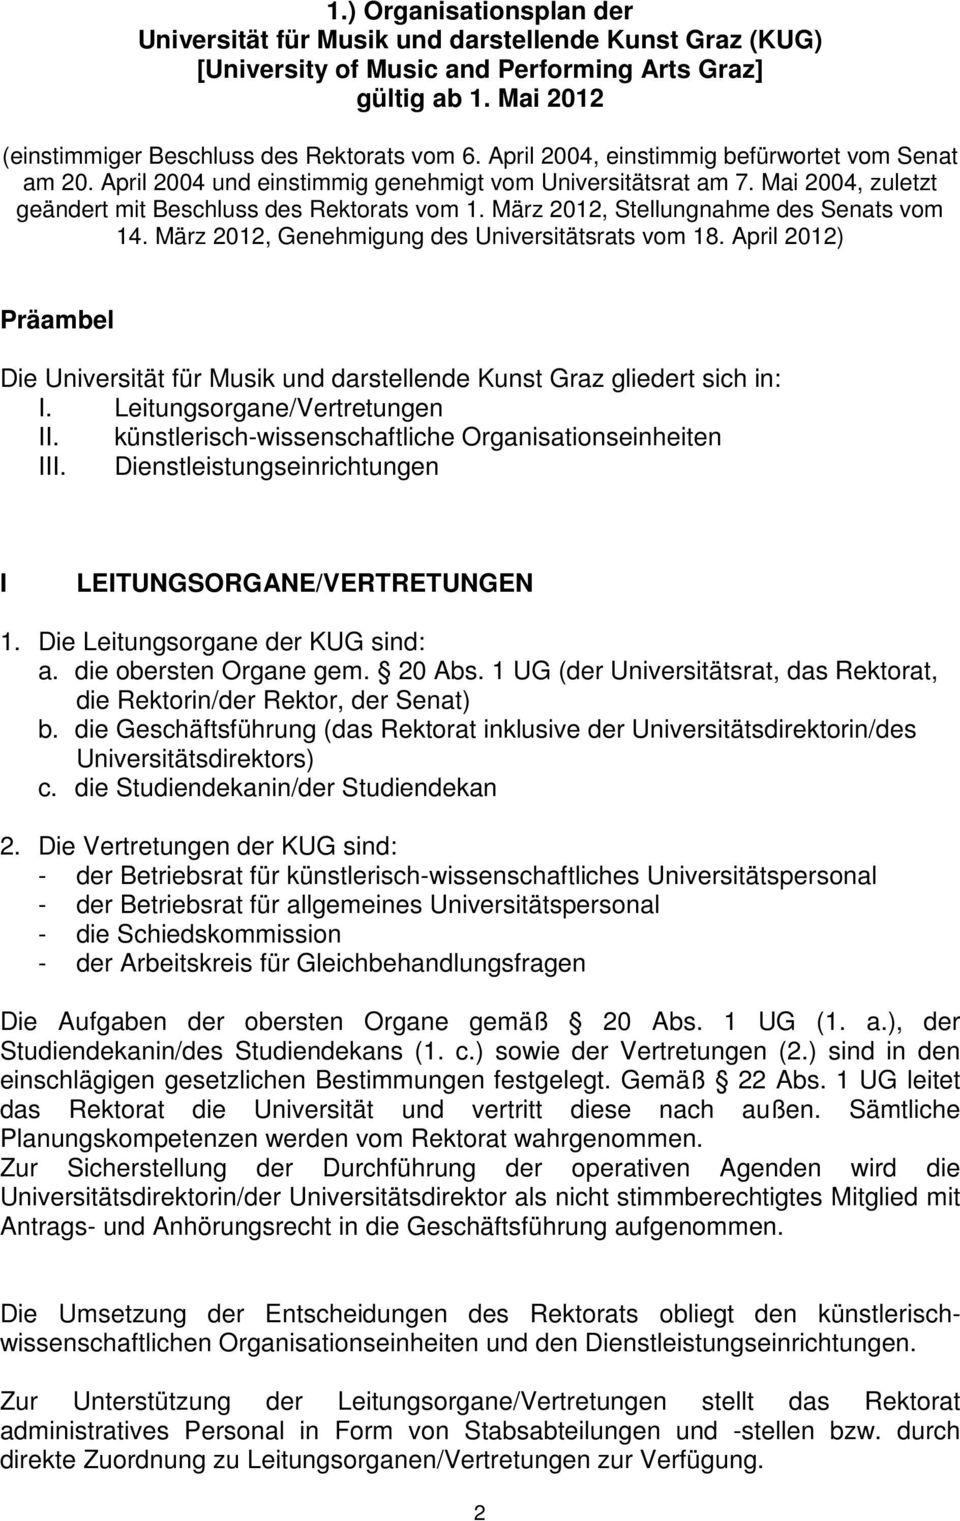 März 2012, Stellungnahme des Senats vom 14. März 2012, Genehmigung des Universitätsrats vom 18. April 2012) Präambel Die Universität für Musik und darstellende Kunst Graz gliedert sich in: I.